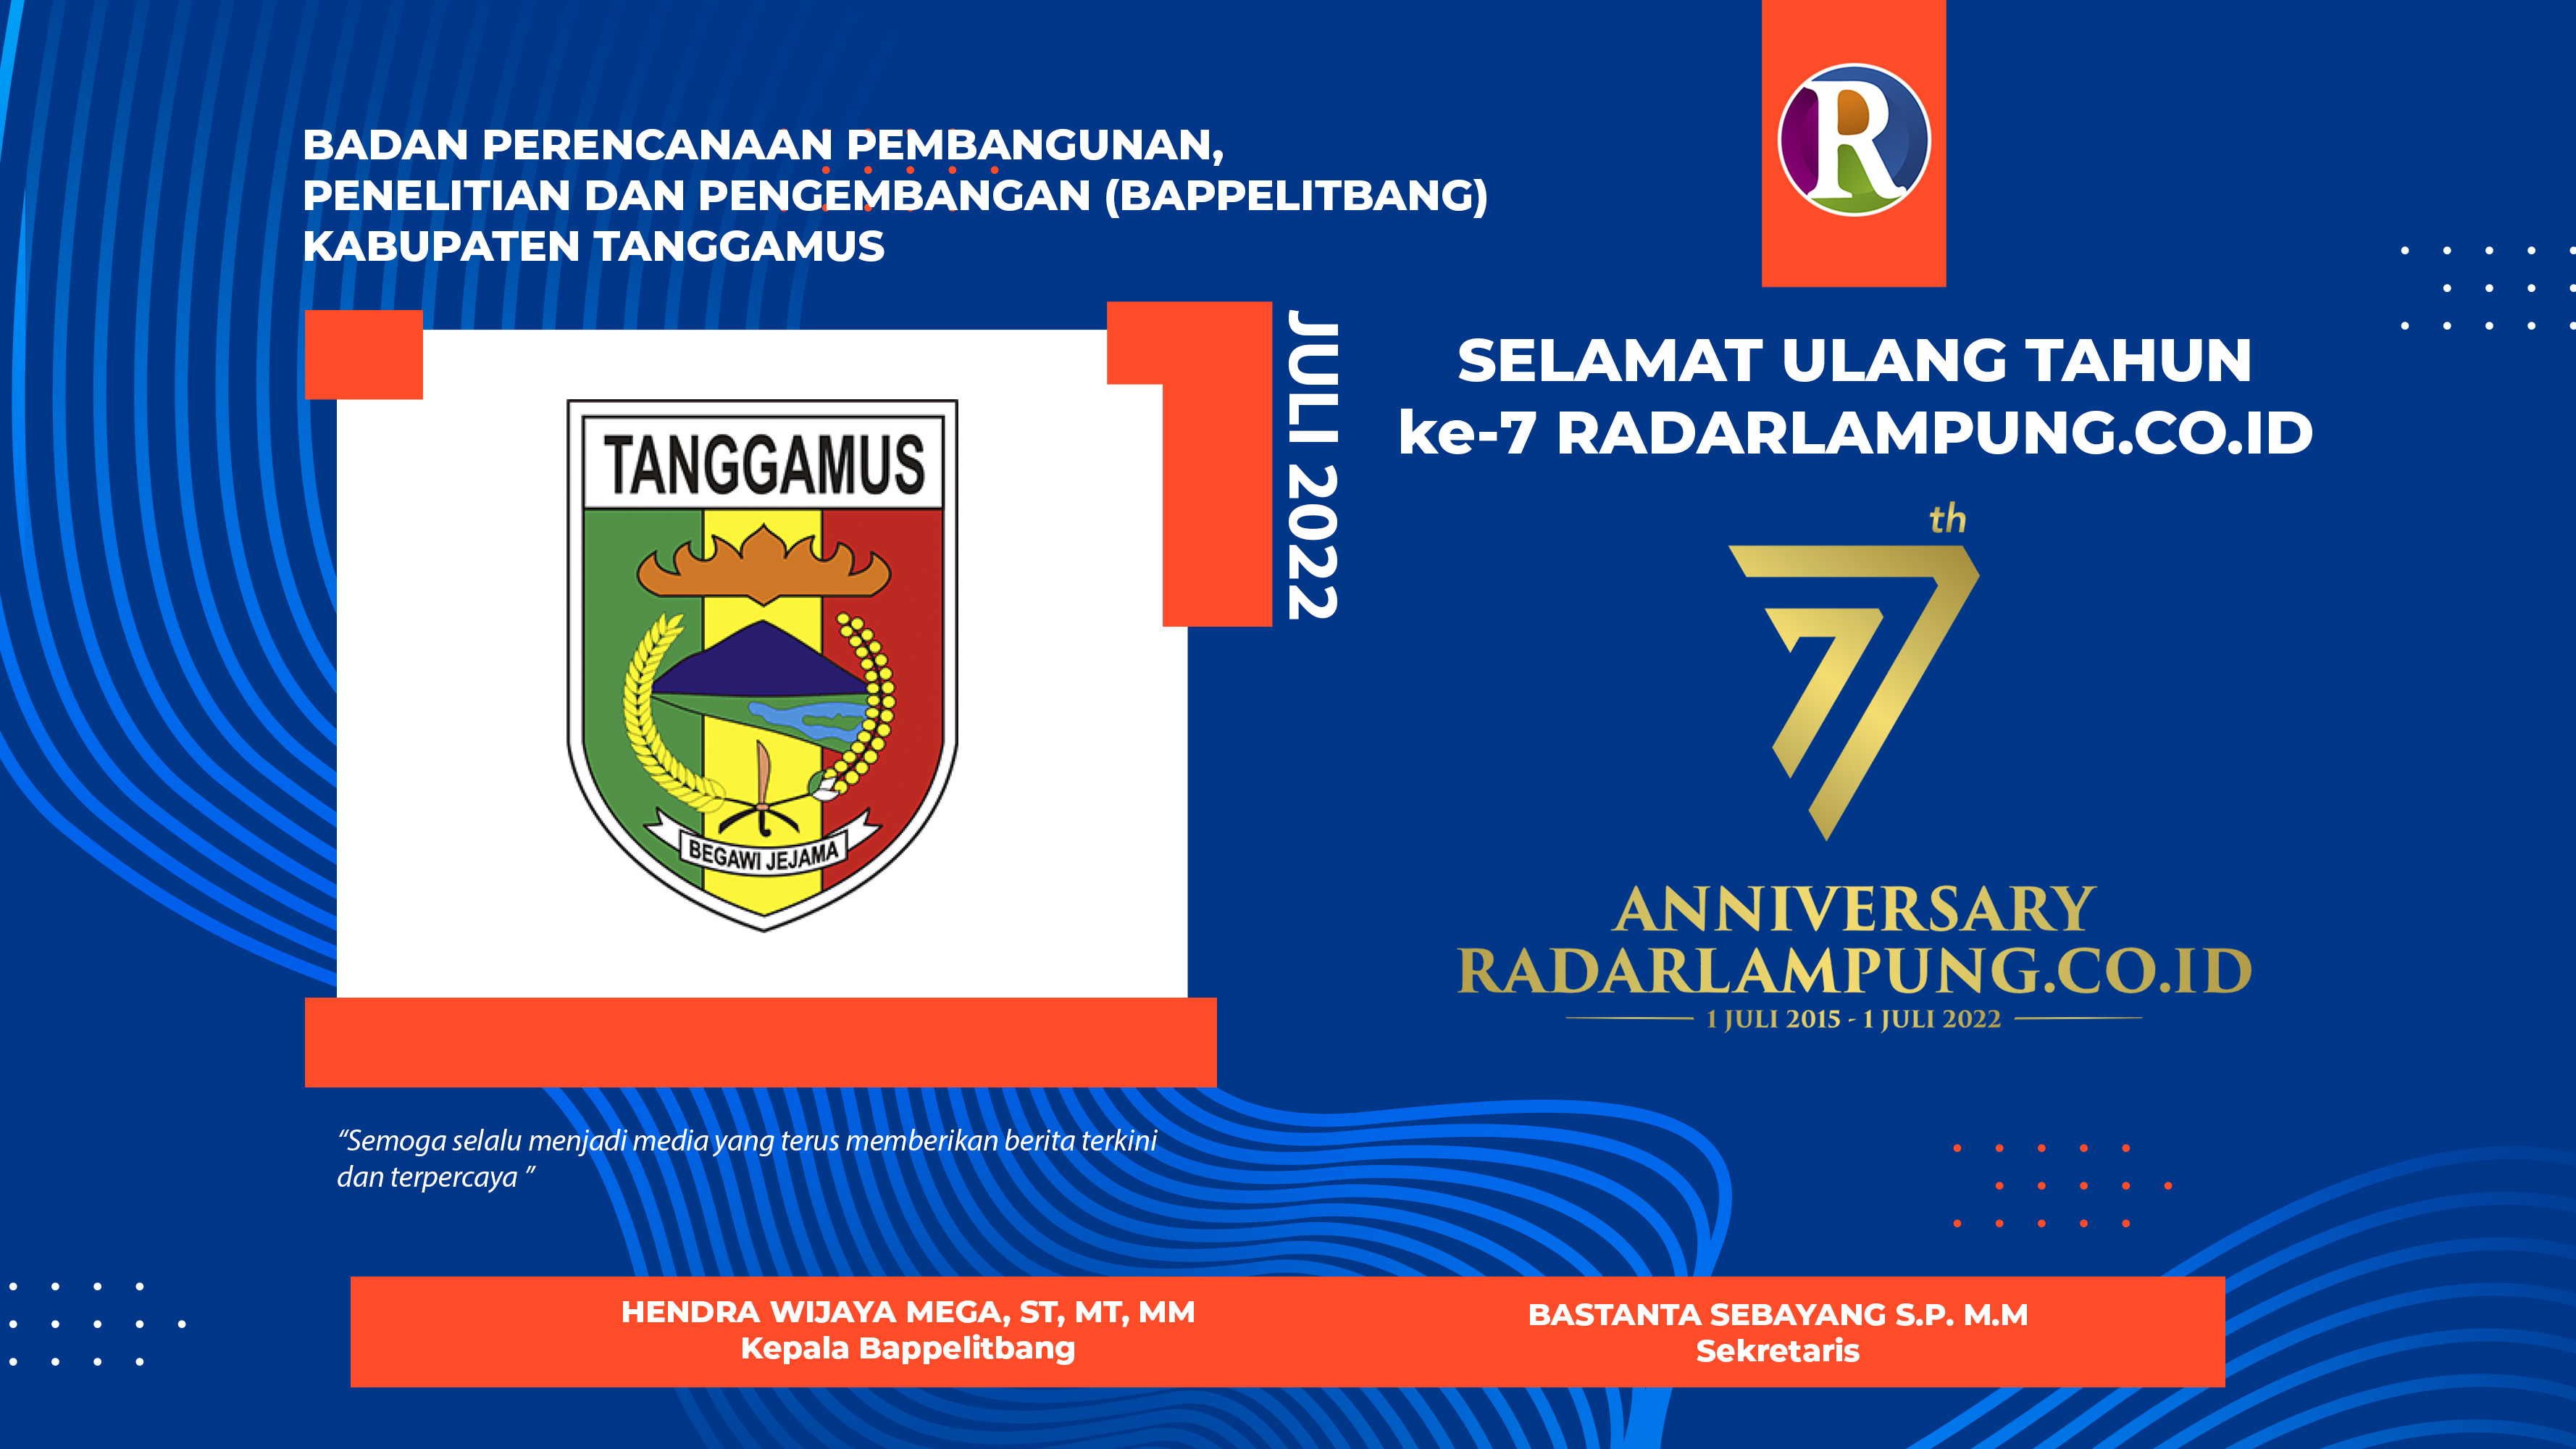 BAPPELITBANG Kabupaten Tanggamus Mengucapkan Selamat Ulang Tahun ke-7 Radarlampung.co.id